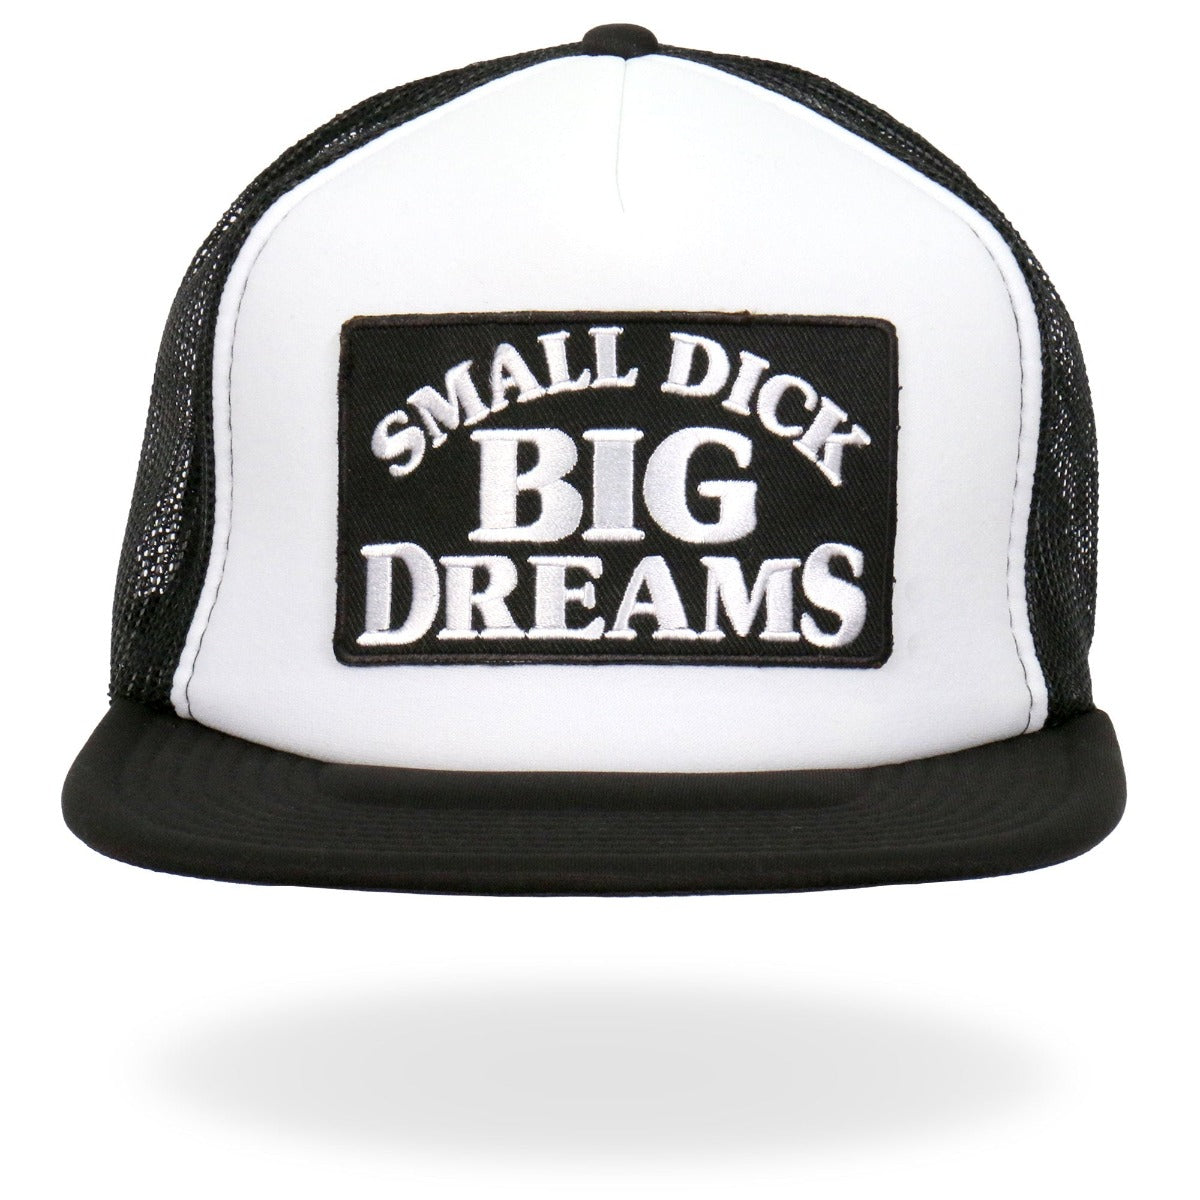 Hot Leathers Small D*ck Big Dreams Snapback Hat